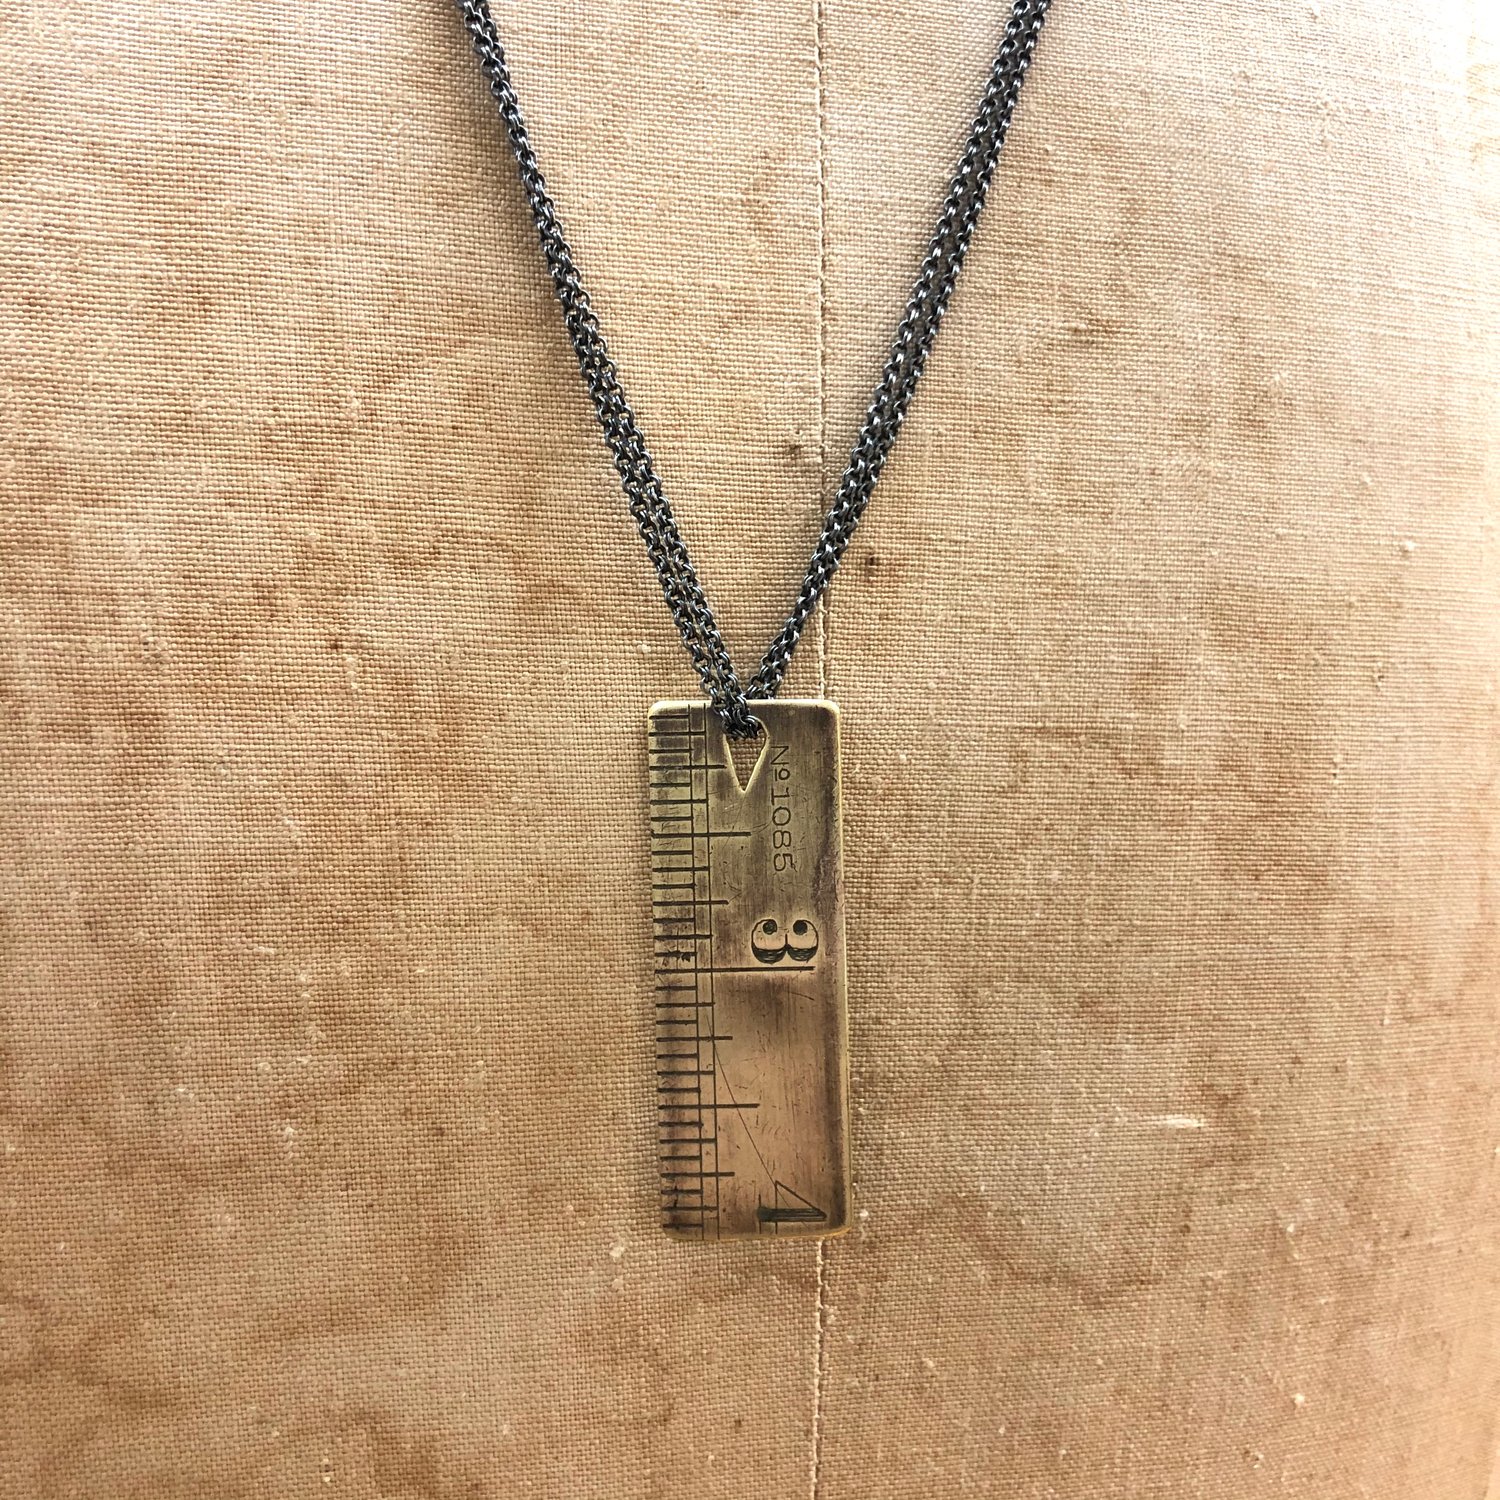 Image of vintage ruler necklace